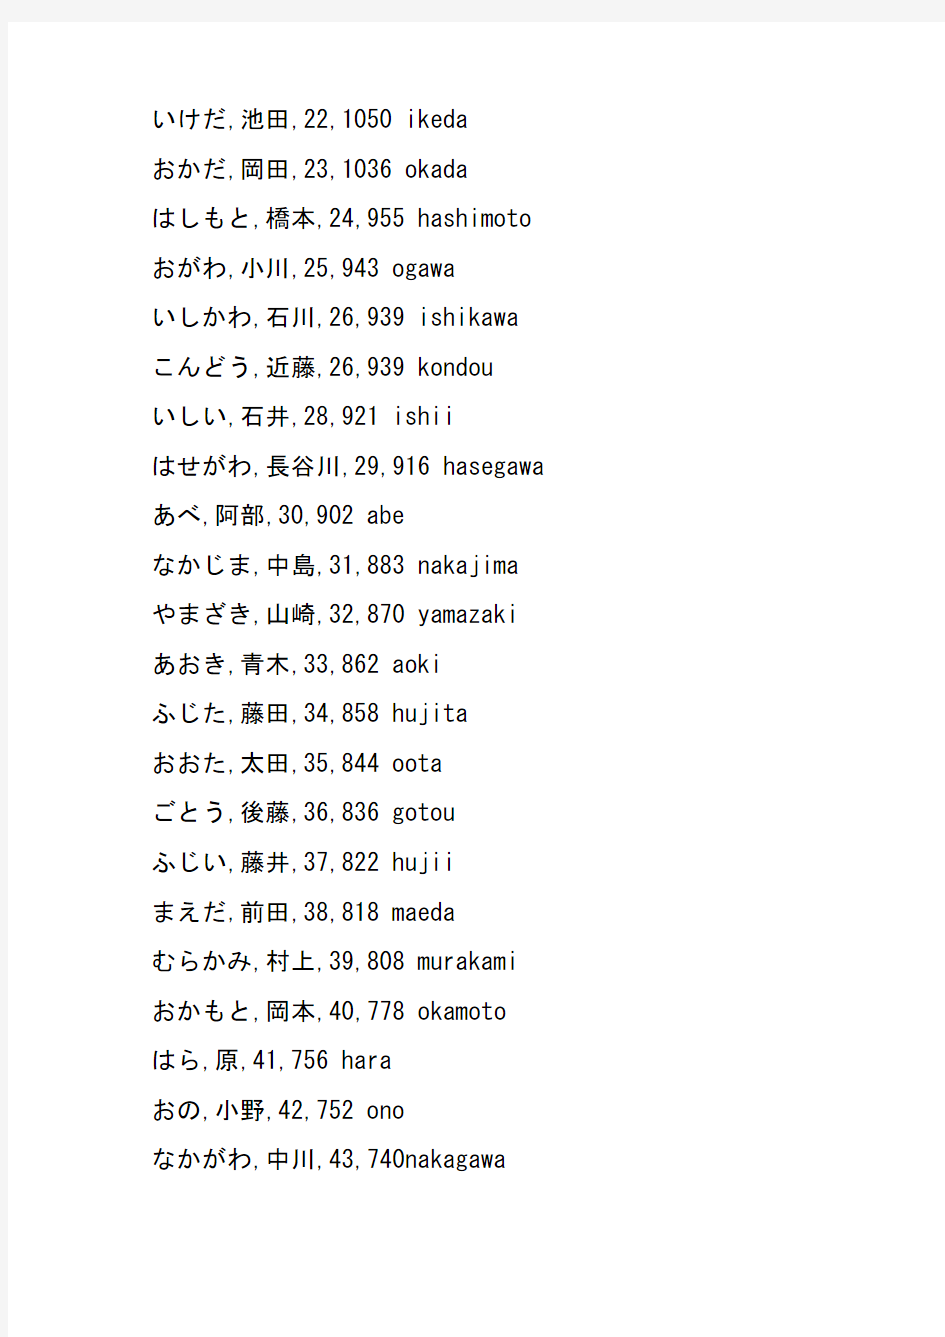 日本人姓氏的读法